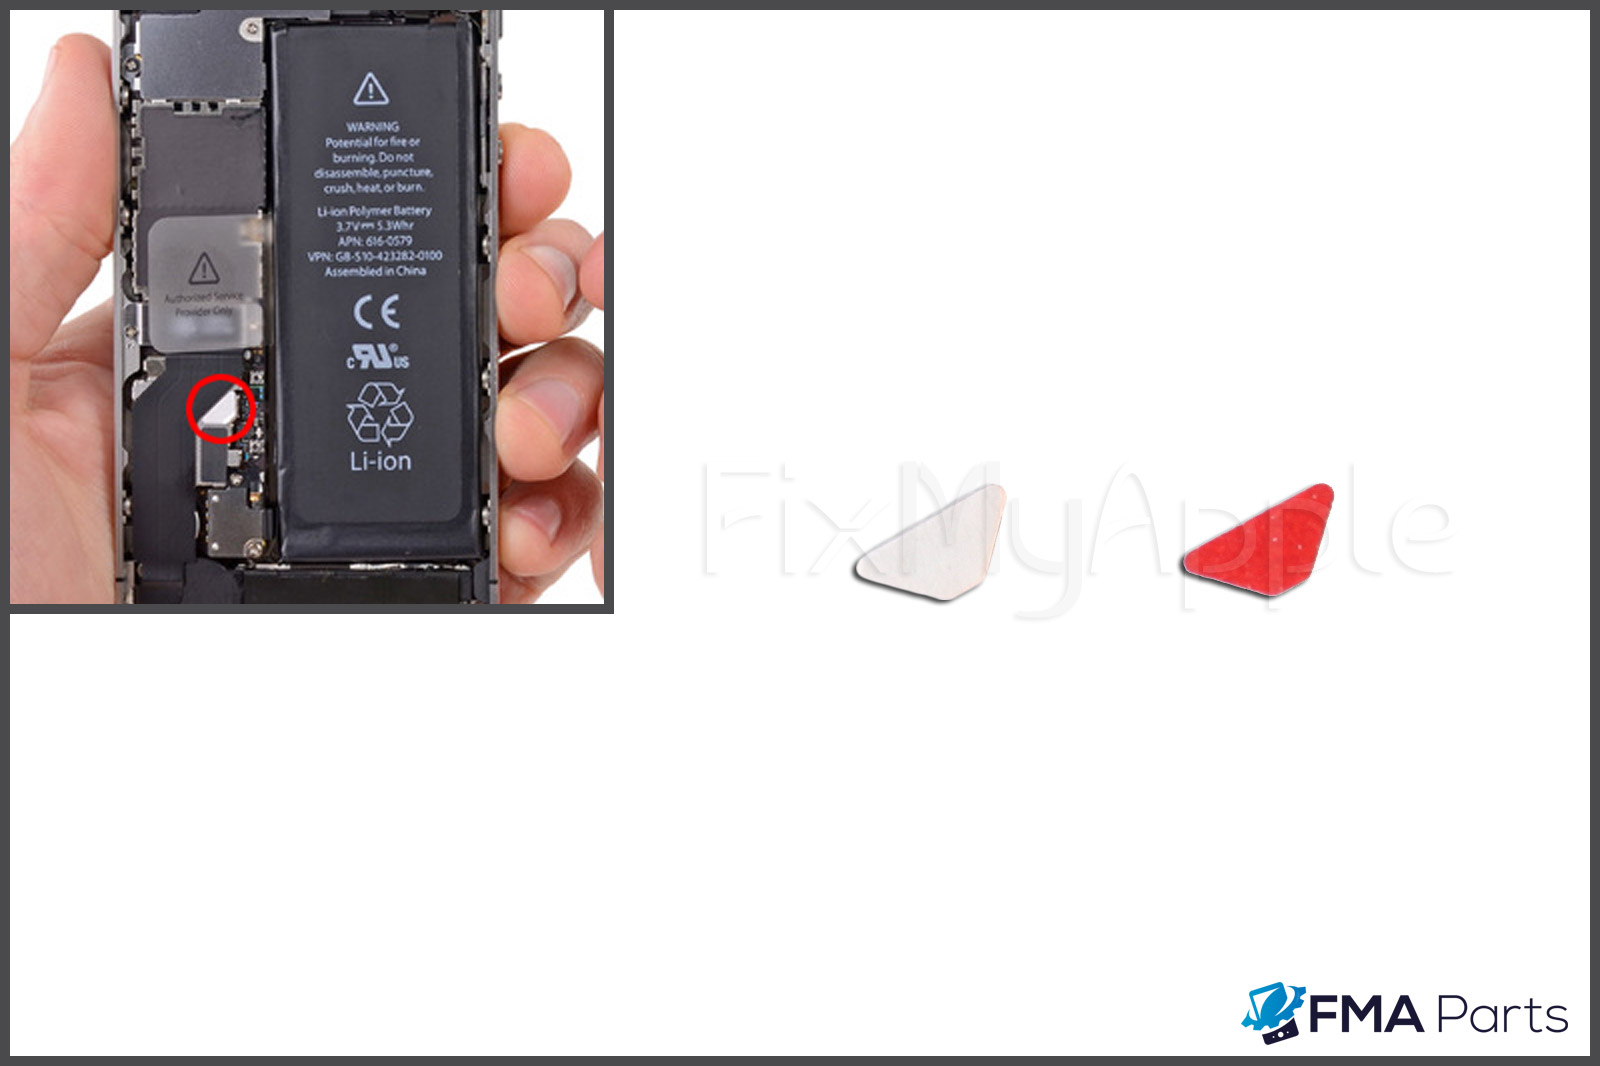 Iphone 4s Original Water Damage Indicator Stickers Replacement Repair 